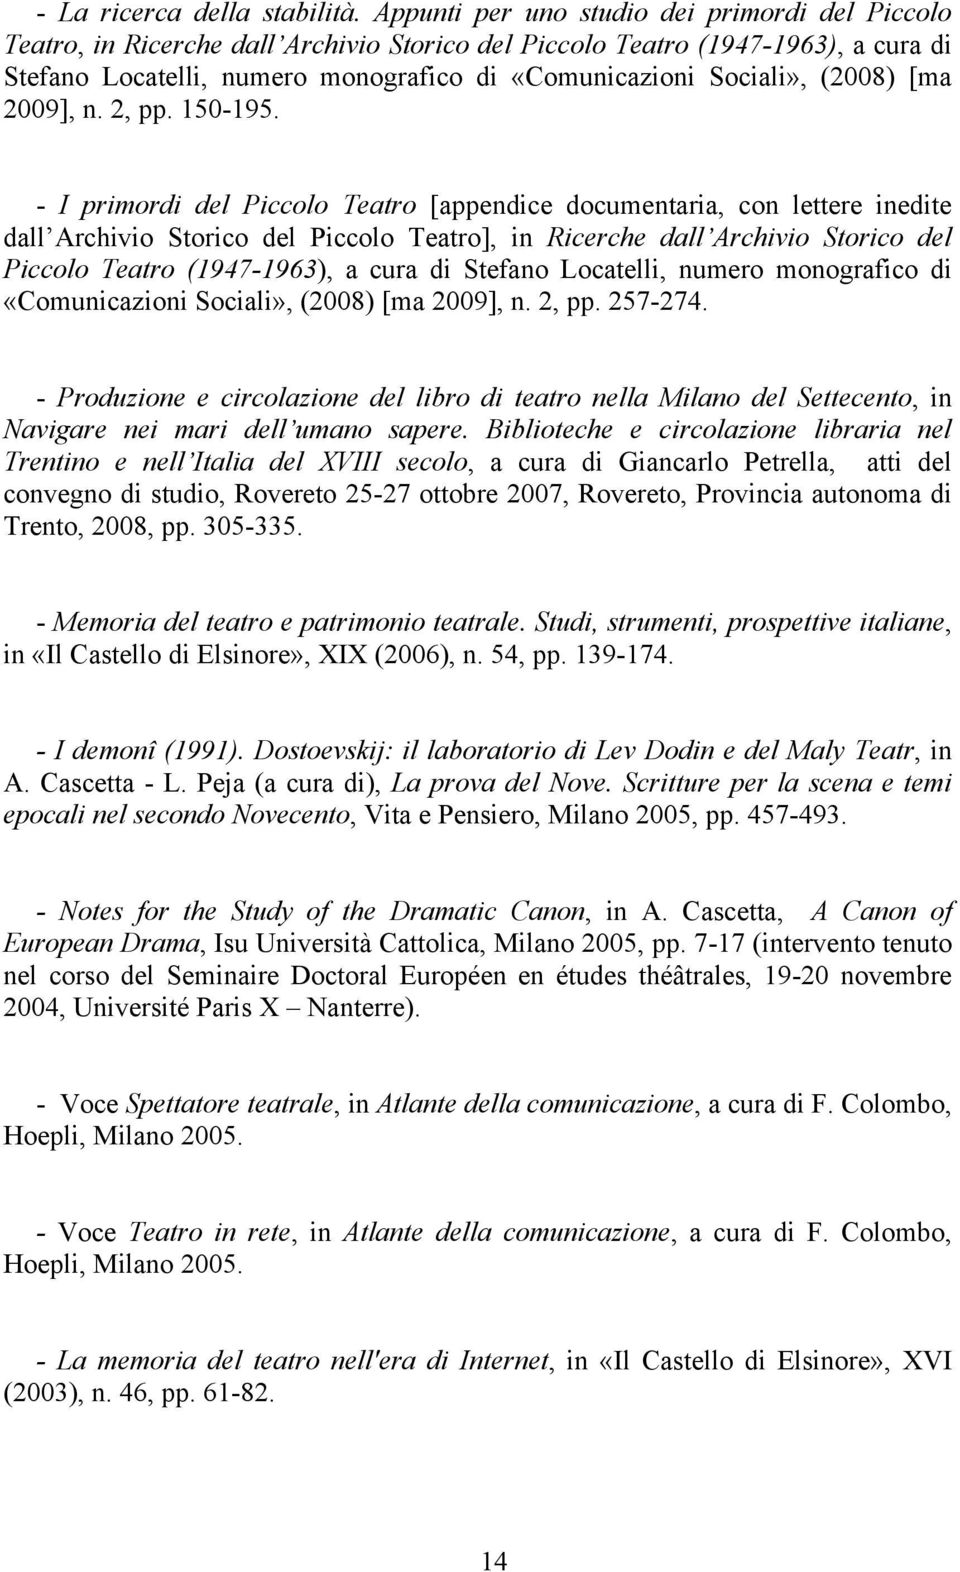 (2008) [ma 2009], n. 2, pp. 150-195.